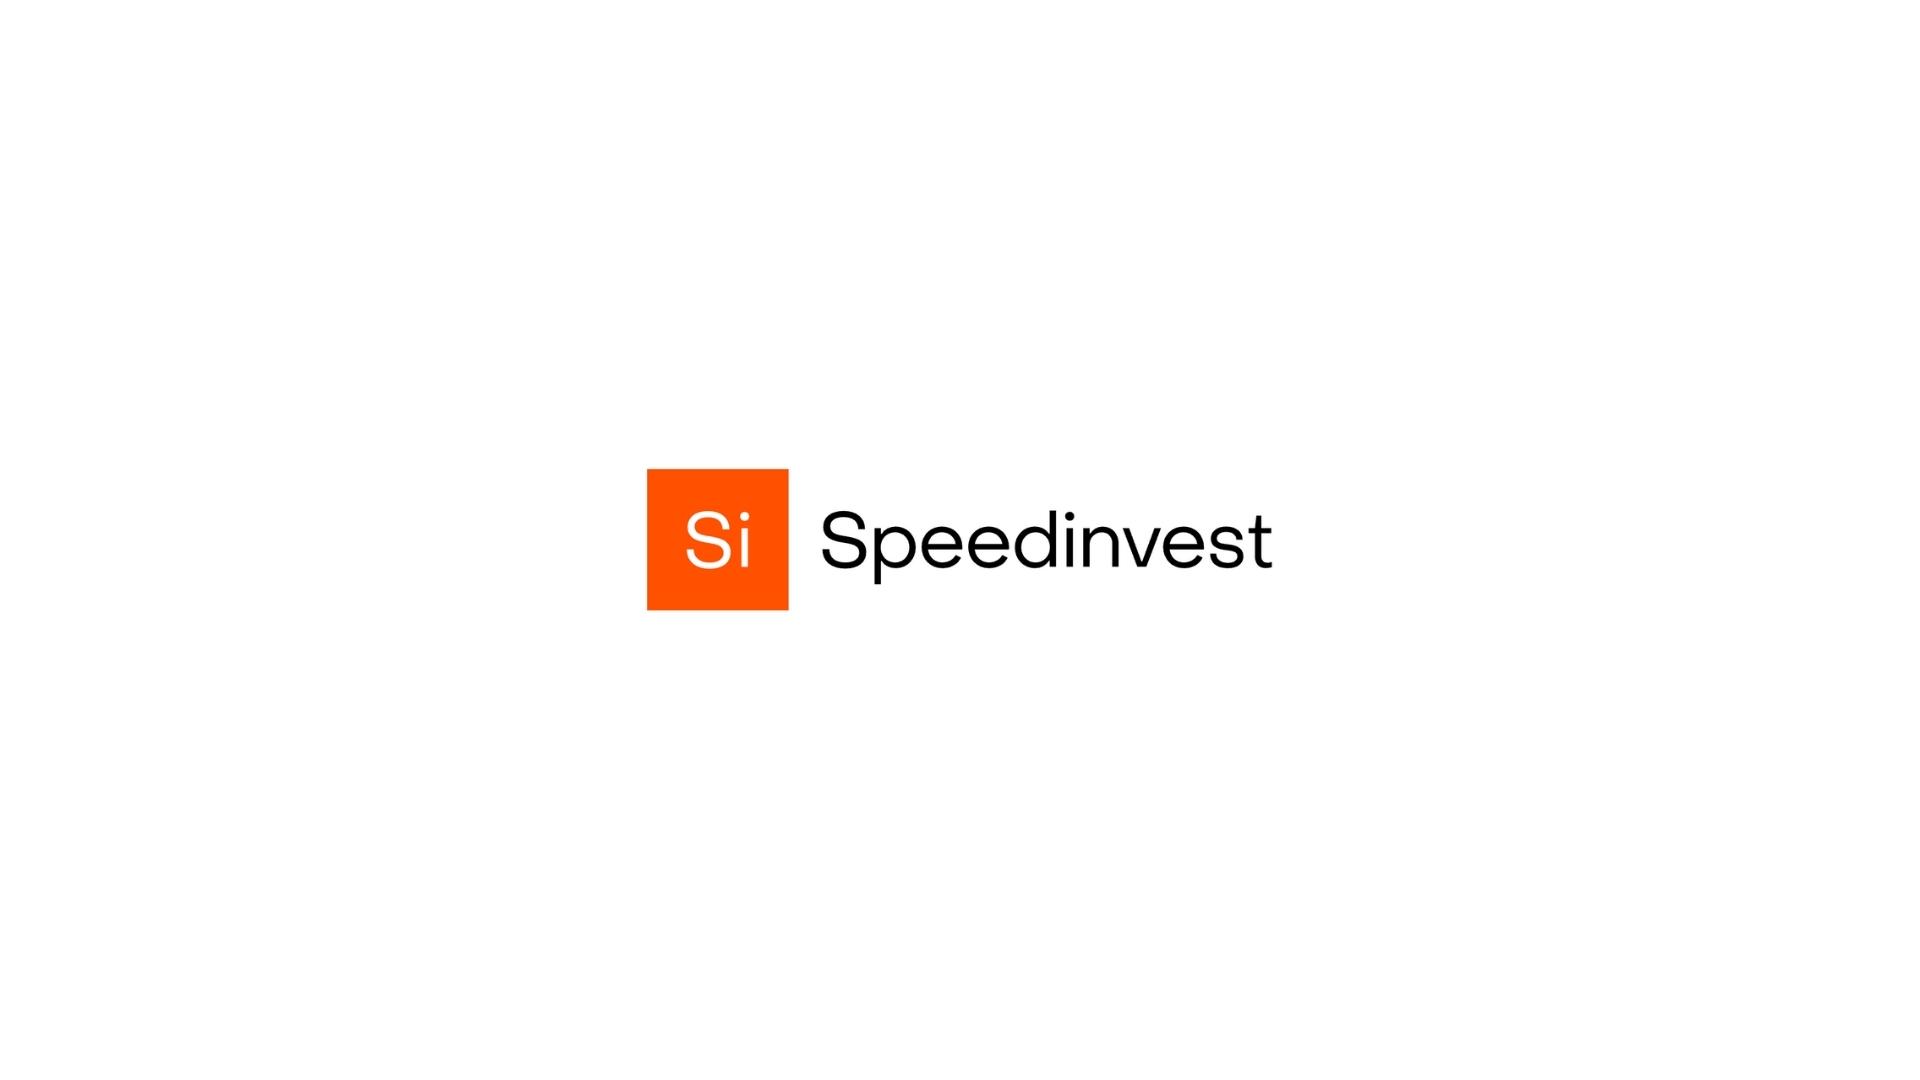 Speedinvest